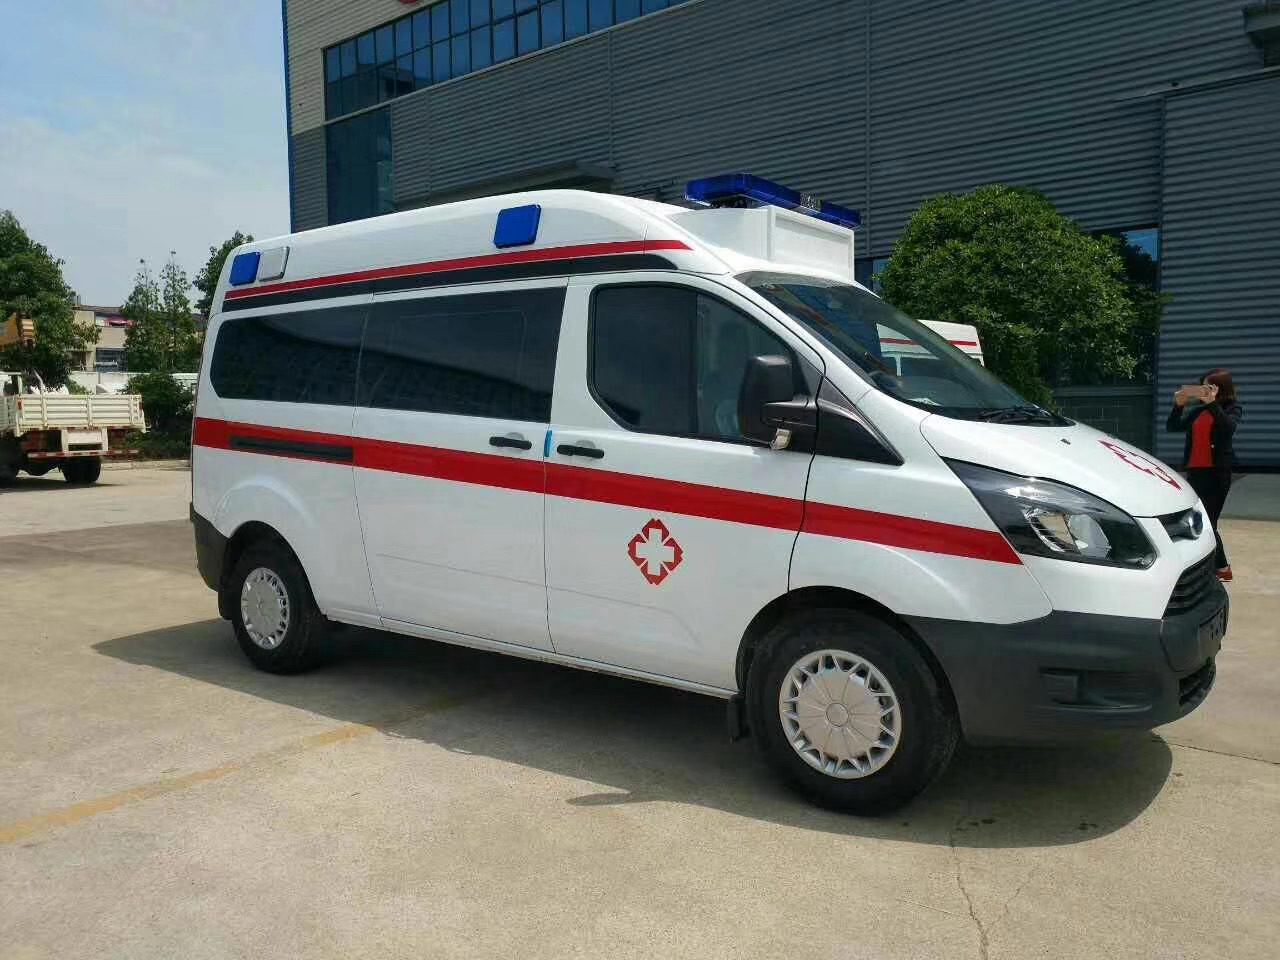 新化县出院转院救护车